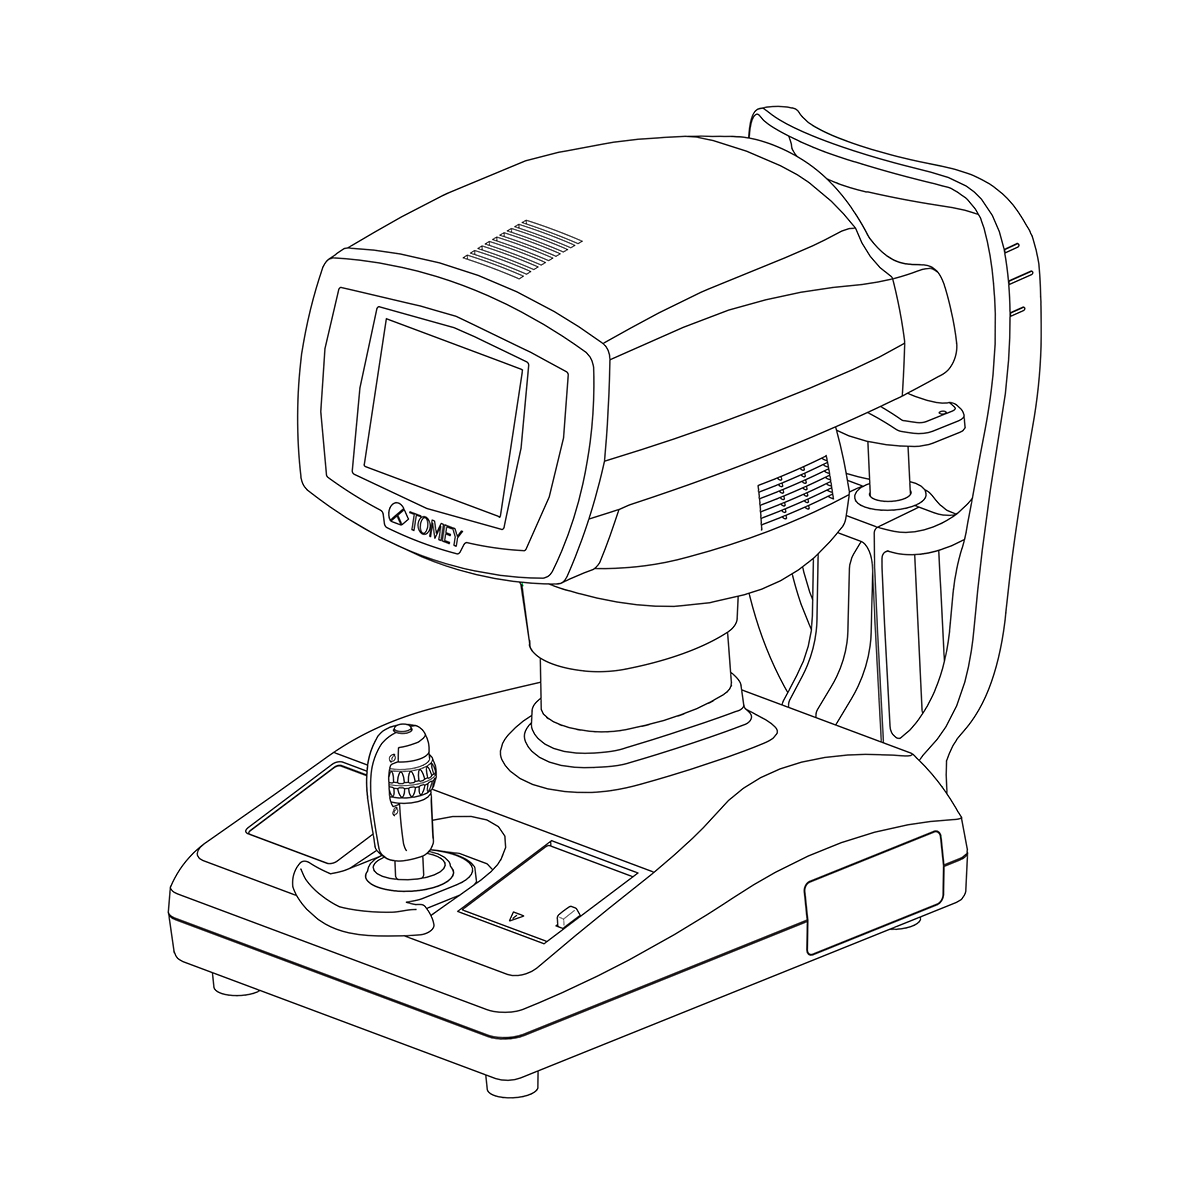 Auto Refractor Optometry Autorefractor Refractometer Keratometry